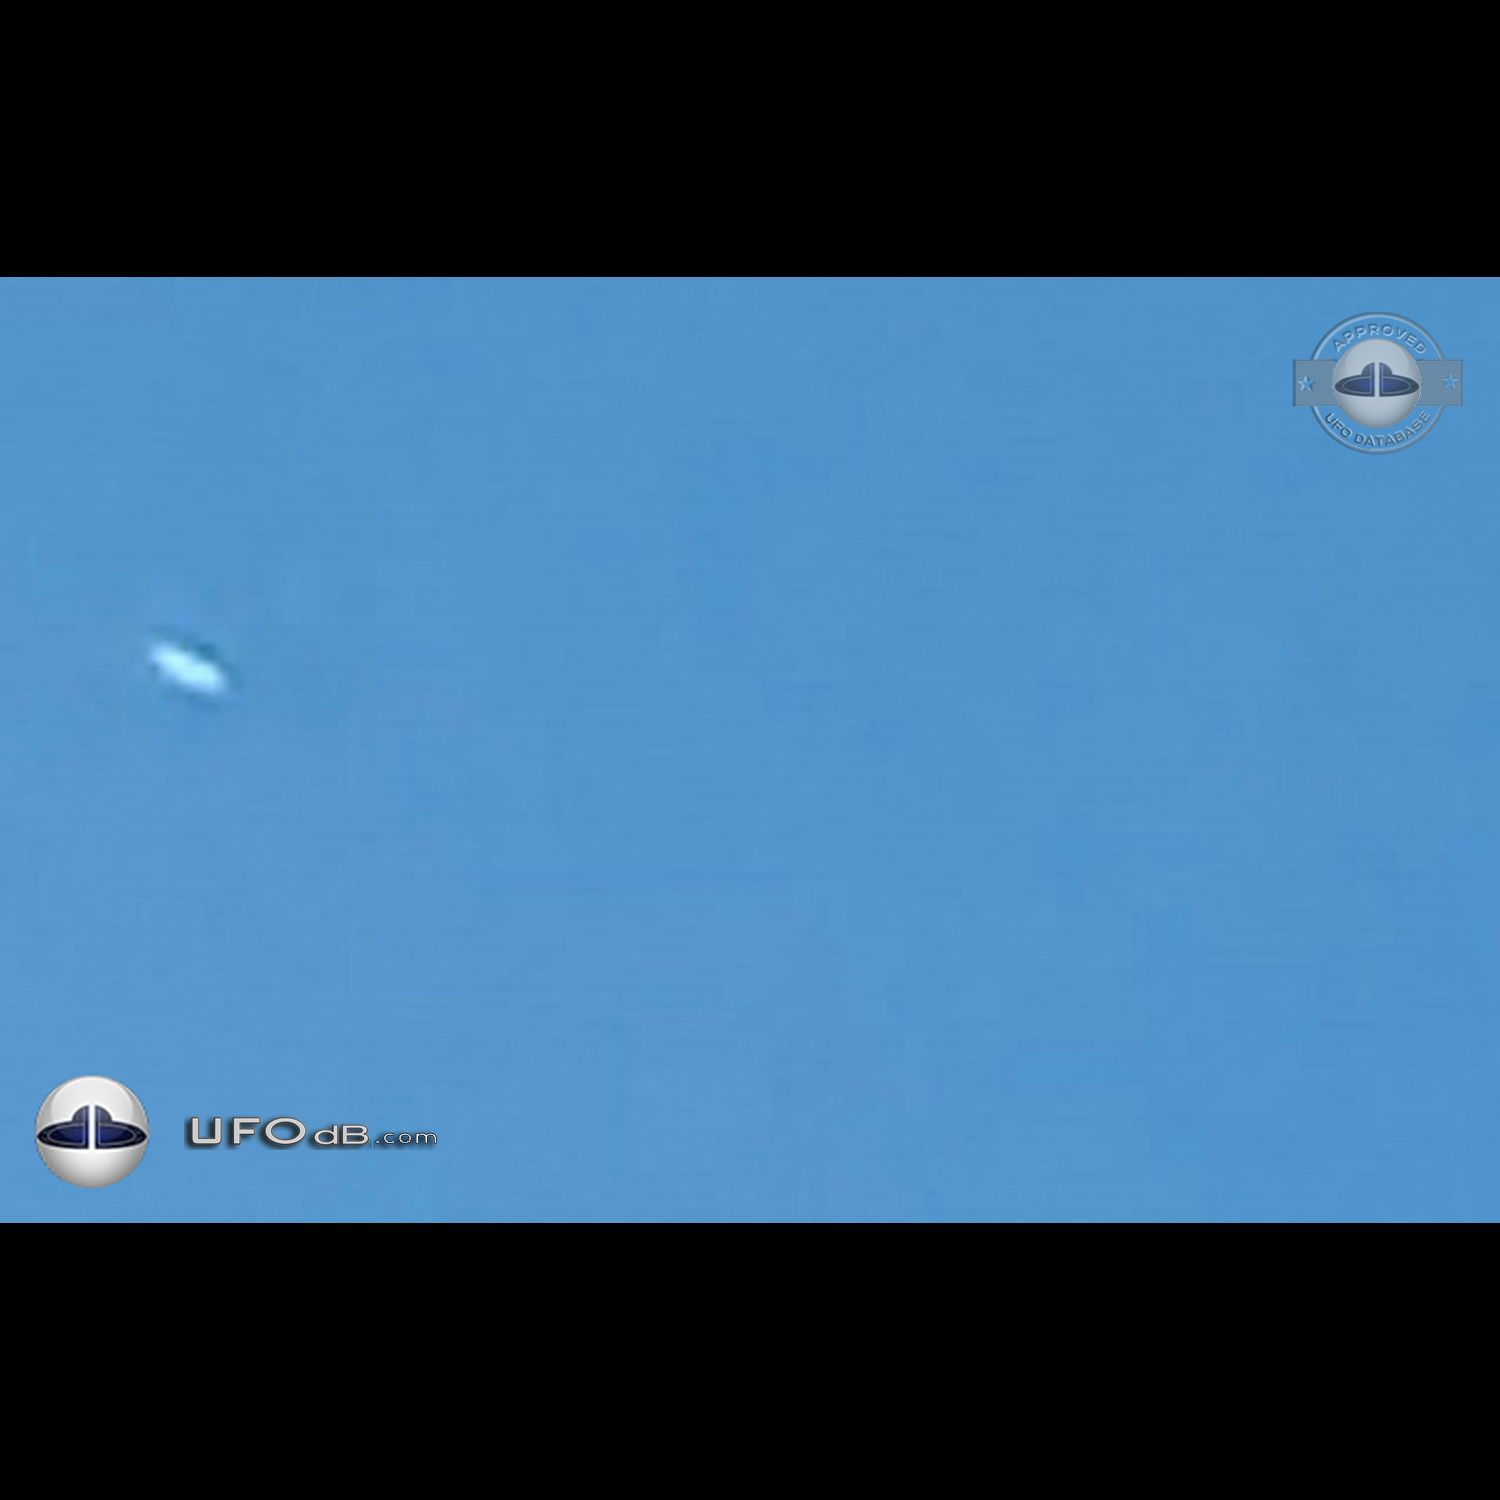 Silent silver Disk UFO gliding in the sky Dalton Pennsylvania USA 2015 UFO Picture #669-3